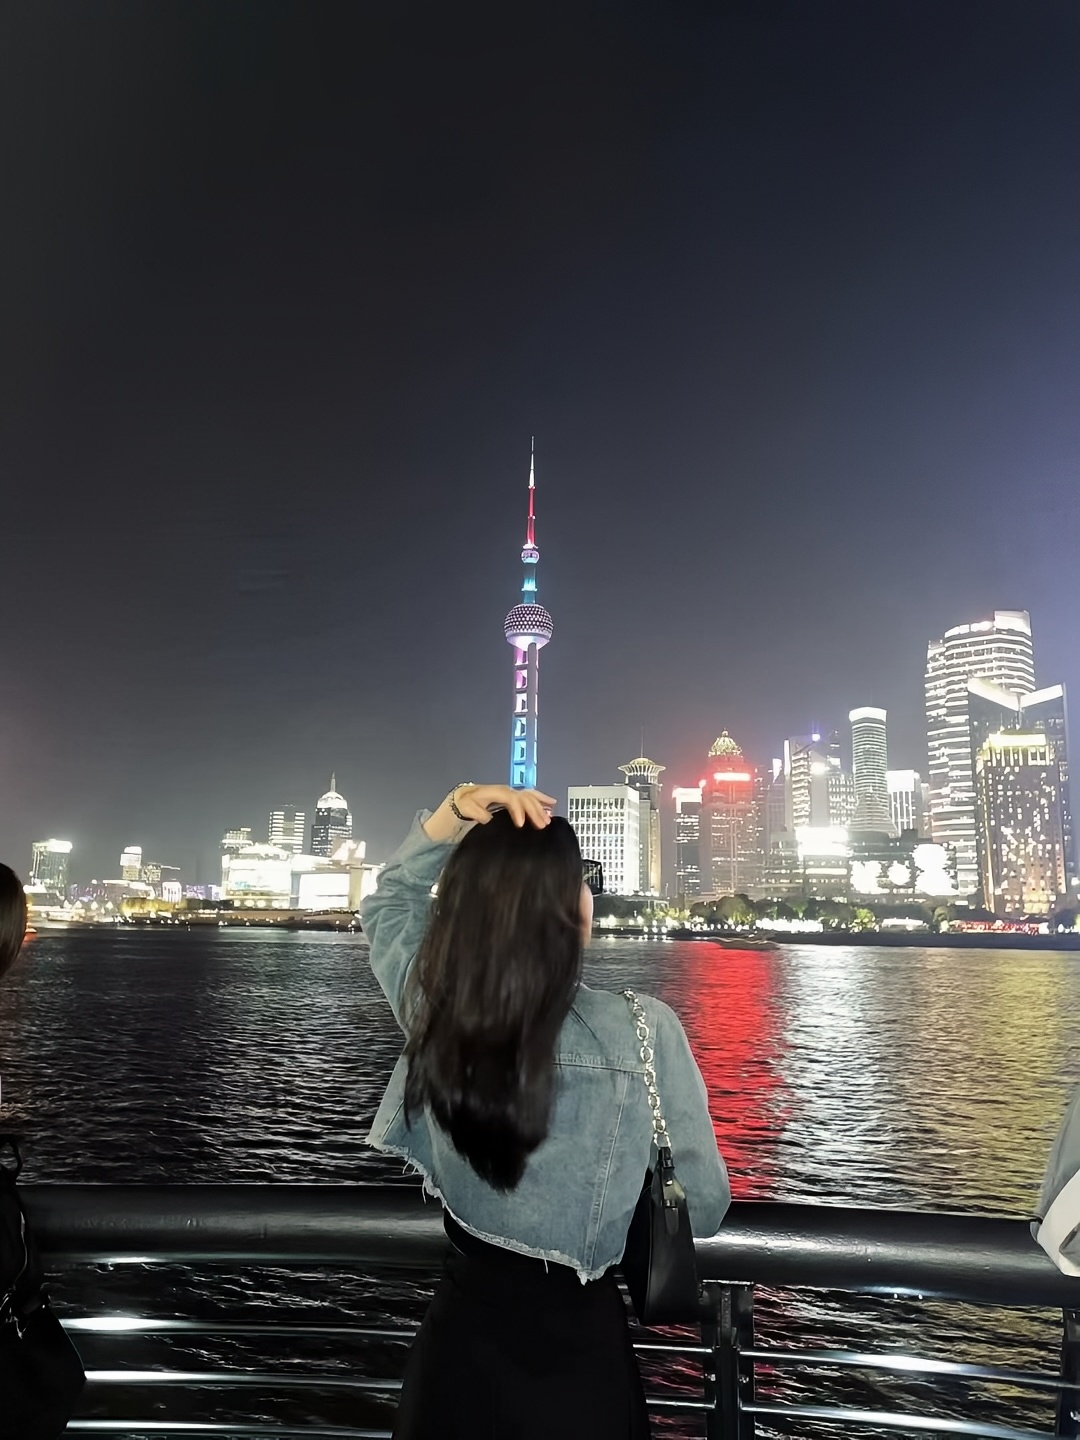 总要去趟上海吧，吹吹黄浦江的晚风，走走武康路，看看东方明珠，感受一下魔都的春天. #上海打卡攻略 #